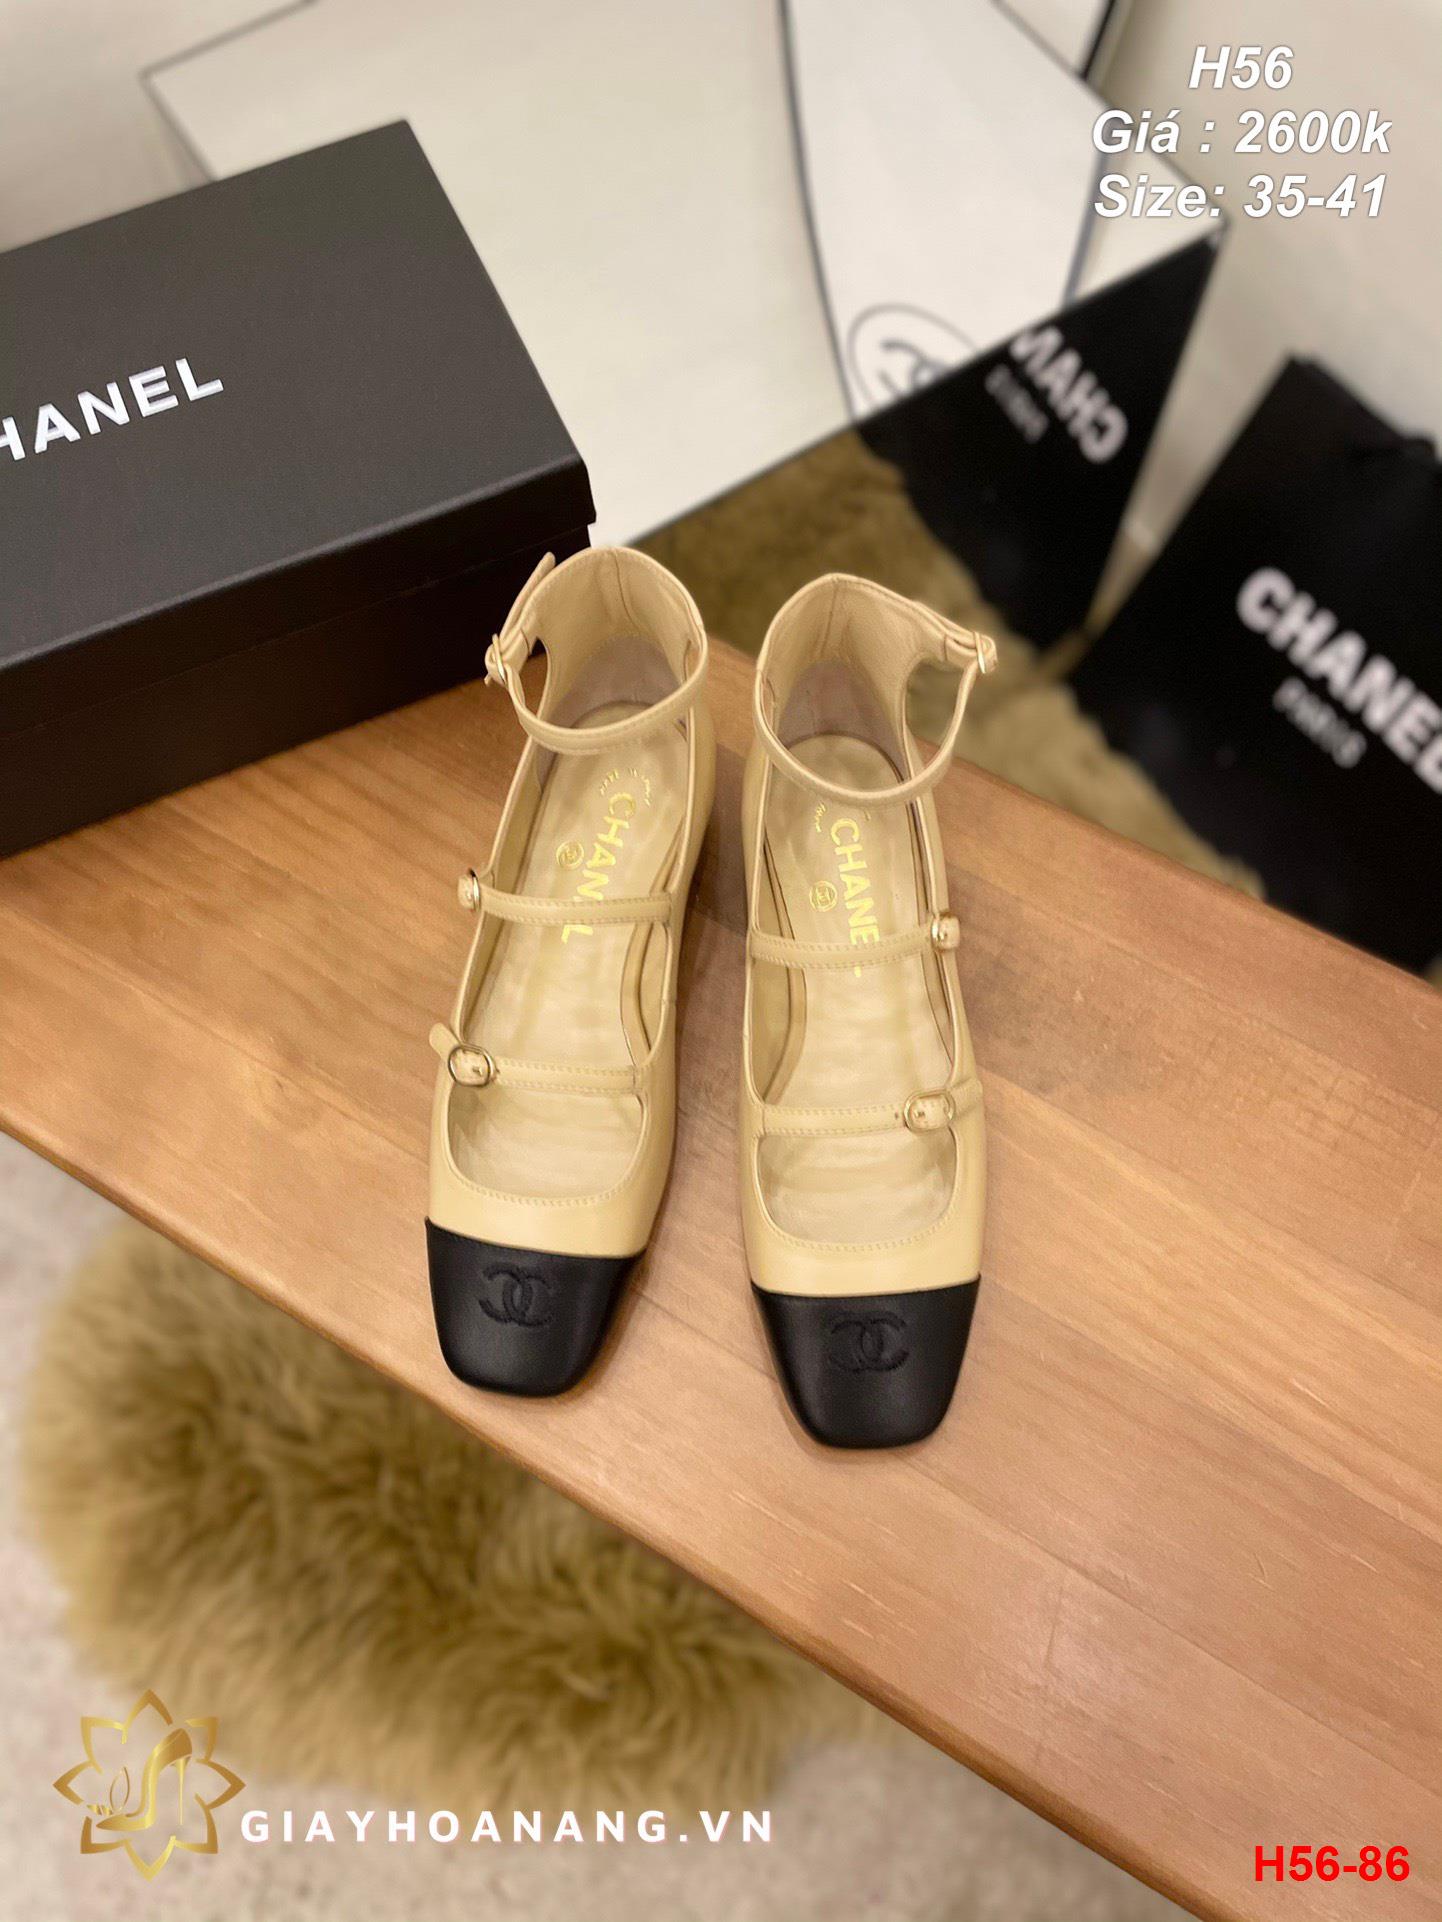 H56-86 Chanel giày bệt siêu cấp